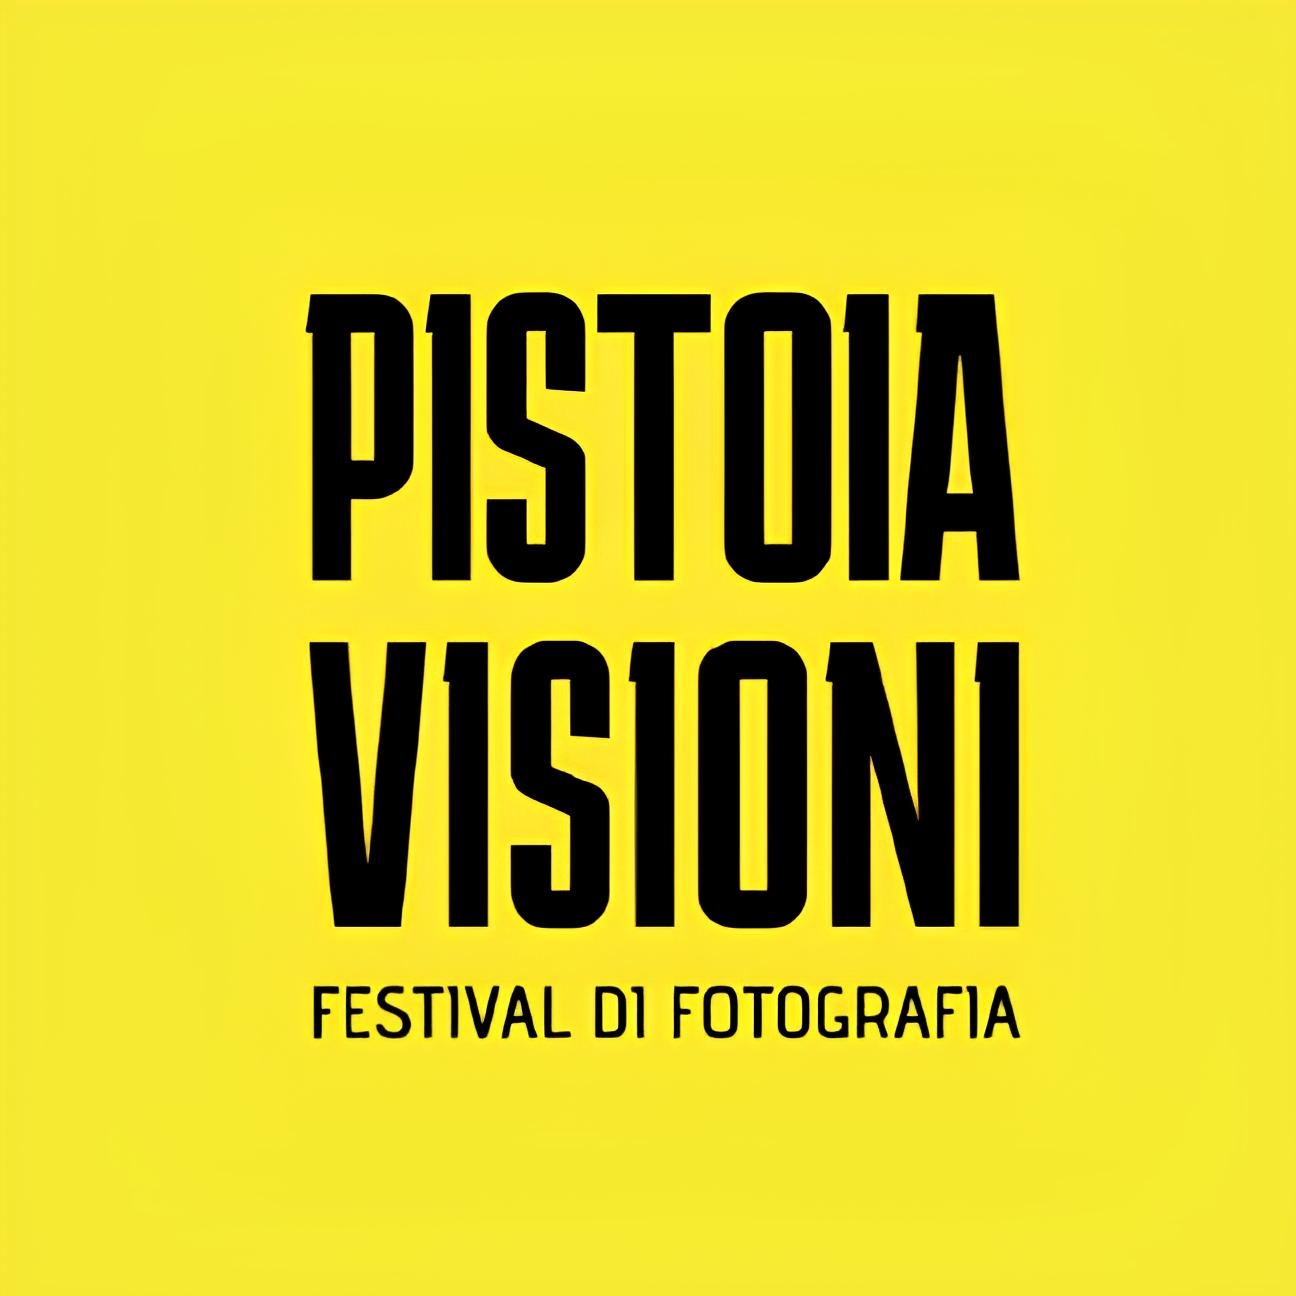 immagine progetto 'Pistoia Visioni - Festival di Fotografia'